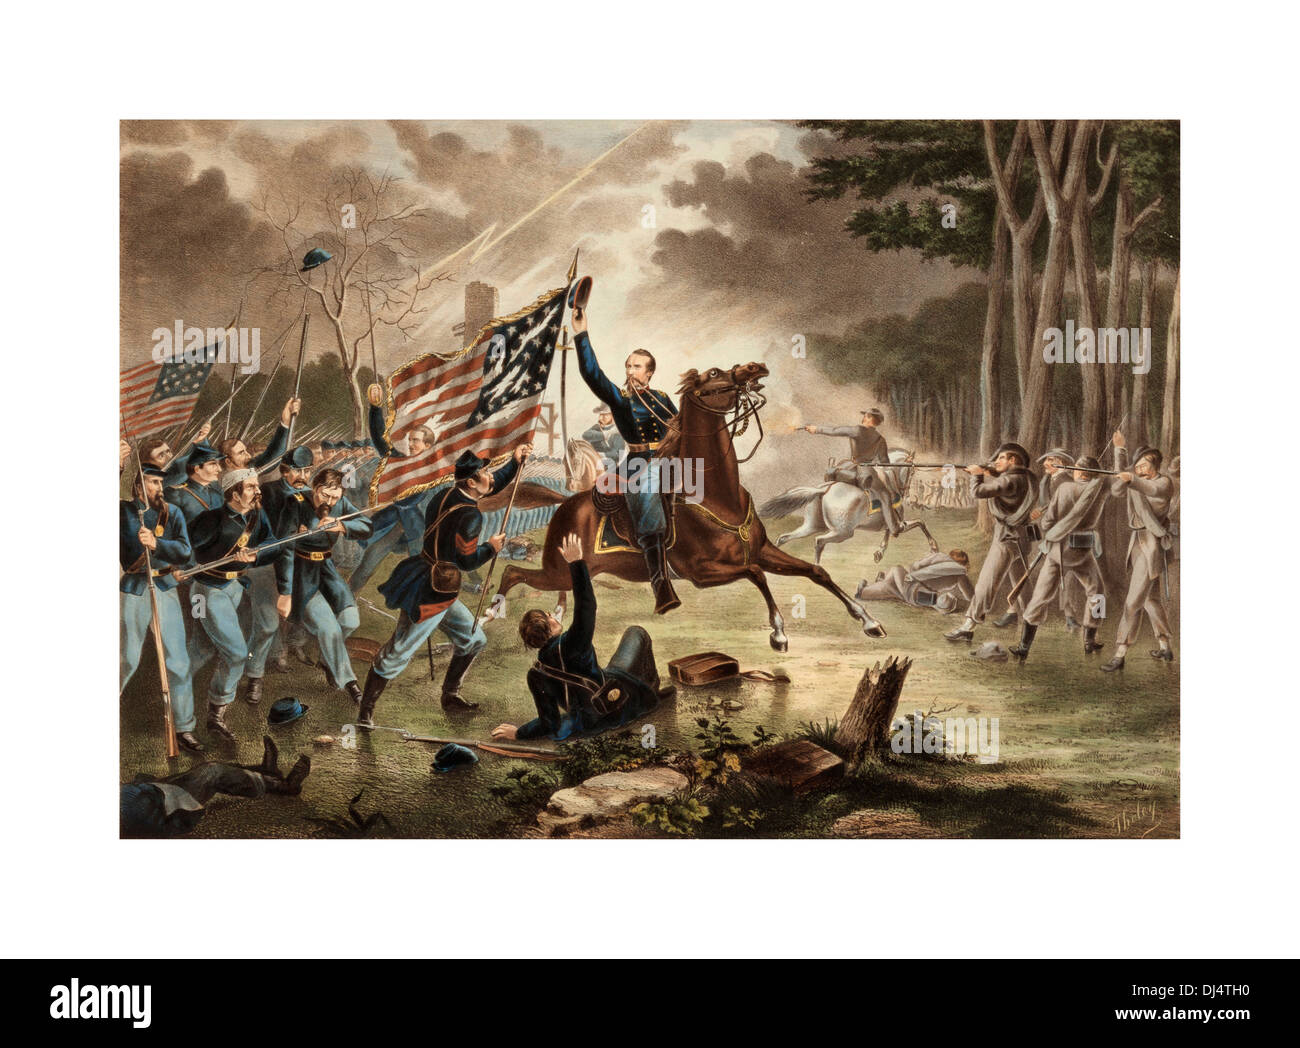 La Guerra Civil americana 1861-1865 Óleo sobre lienzo General Kearney batalla de Chantilly 1862 donde el ejército confederado ganó el día Foto de stock